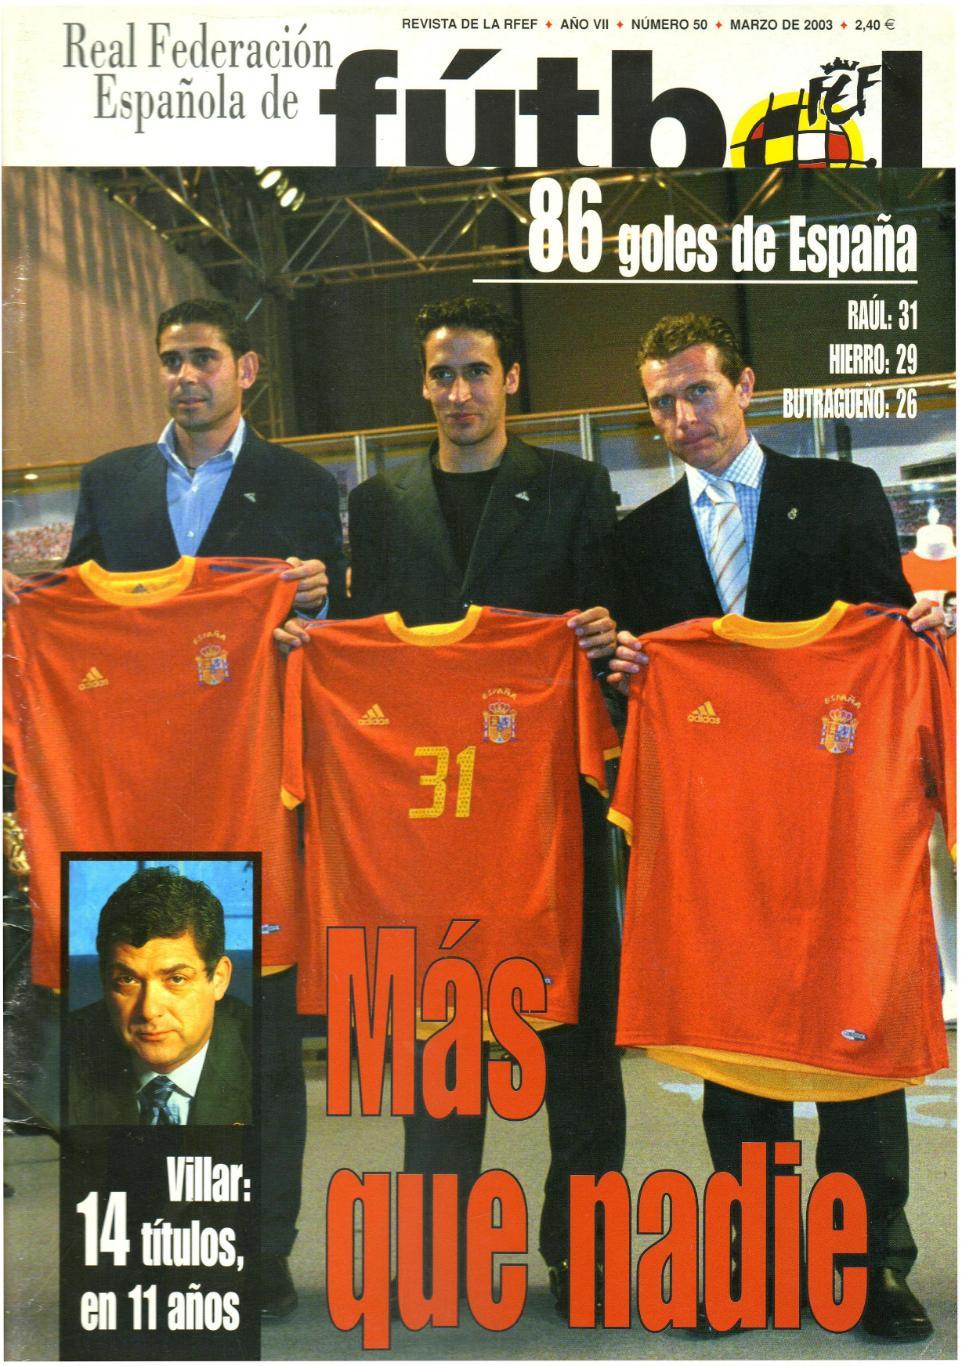 Официальный журнал Королевской Федерации футбола Испании RFEF 2003 Март